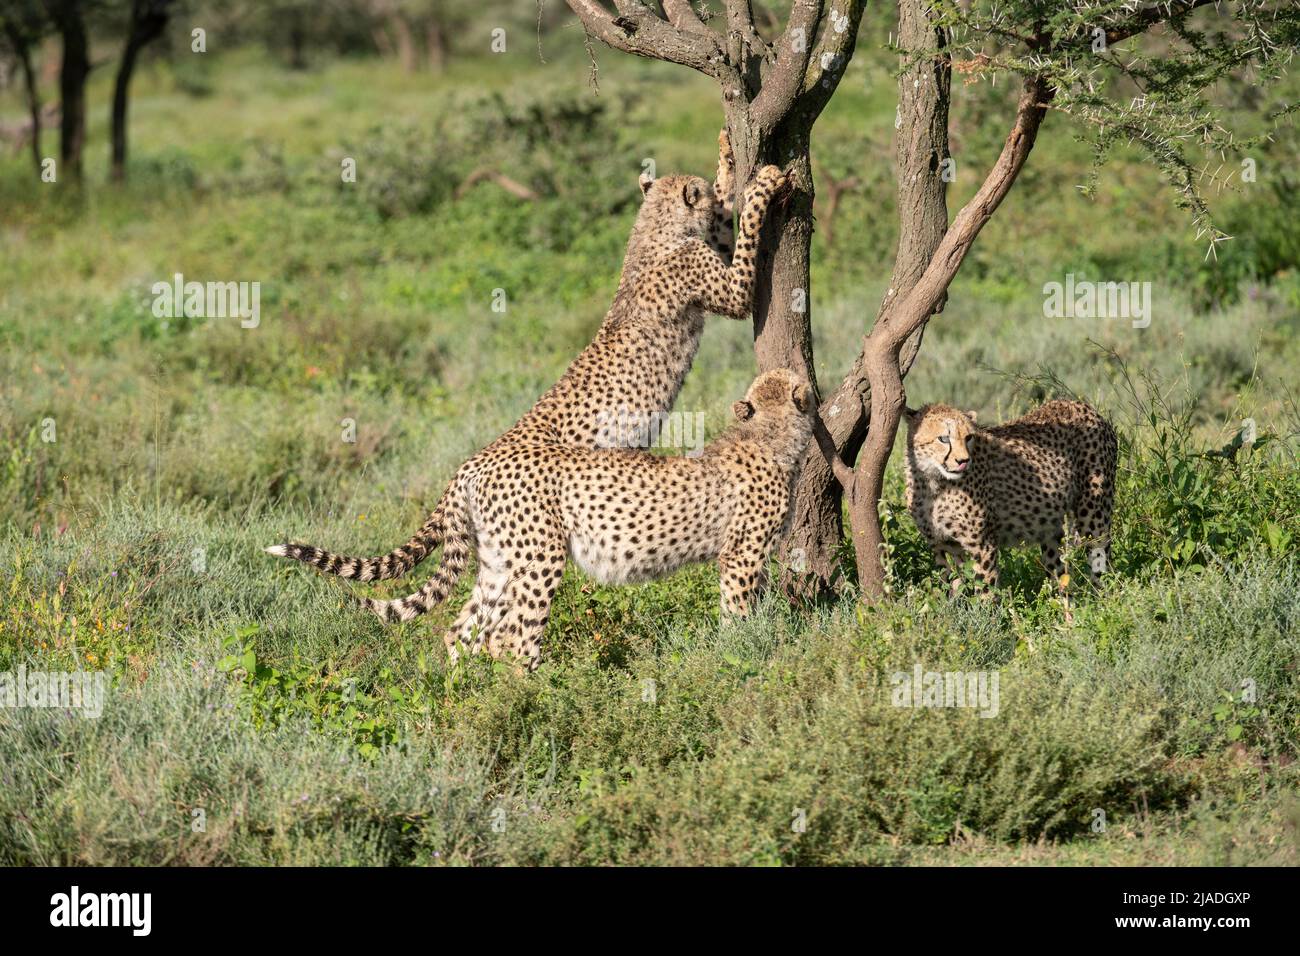 Cheetah siblings at tree, Tanzania Stock Photo